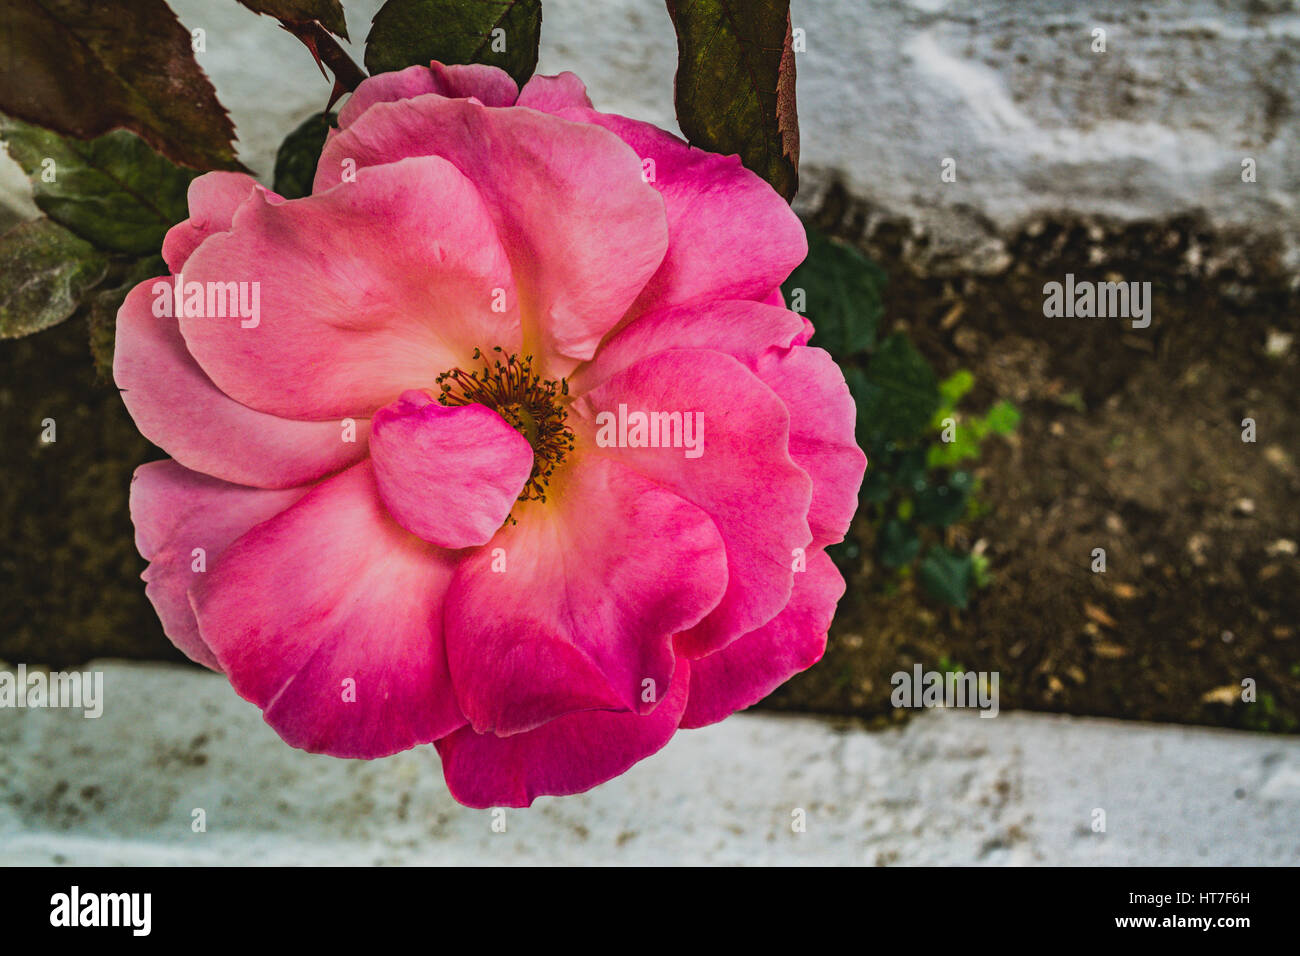 big pink flower with petals closeup Stock Photo